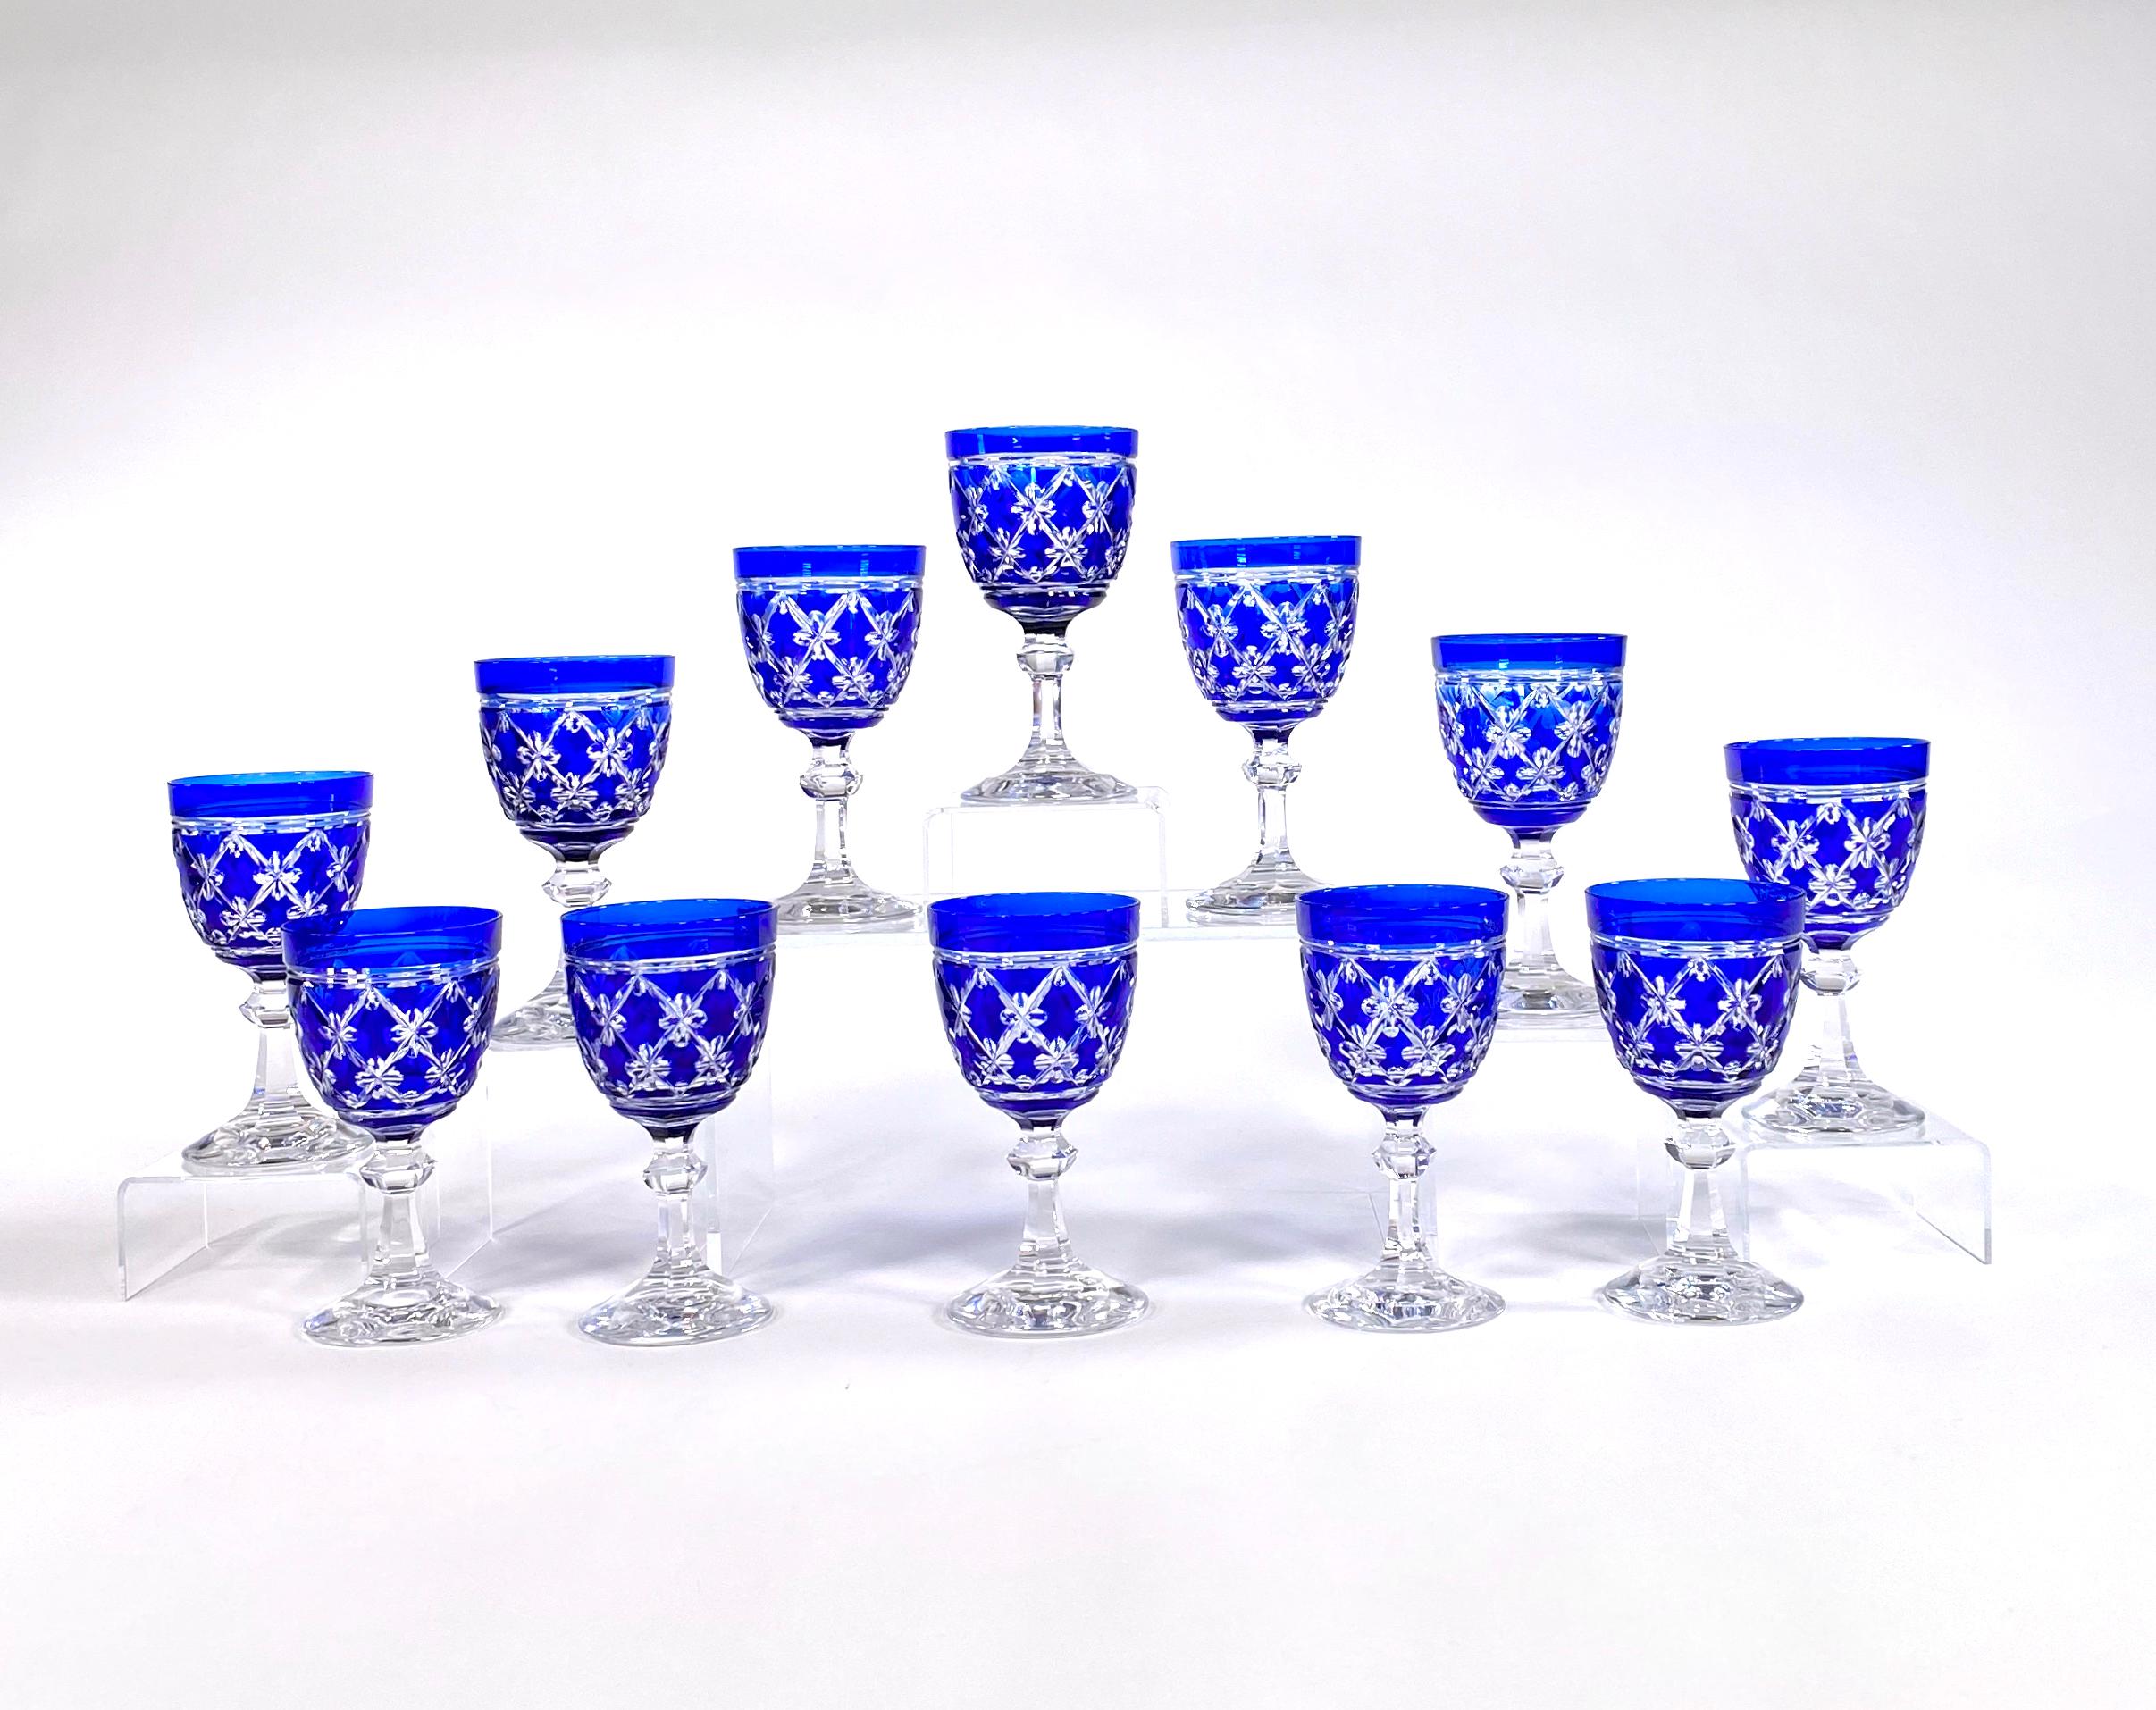 Ce set de 12 gobelets à eau ou à vin, l'un des modèles les plus recherchés de Val Saint Lambert, est en cristal soufflé à la main avec un overlay bleu cobalt et taillé pour être transparent dans le modèle 